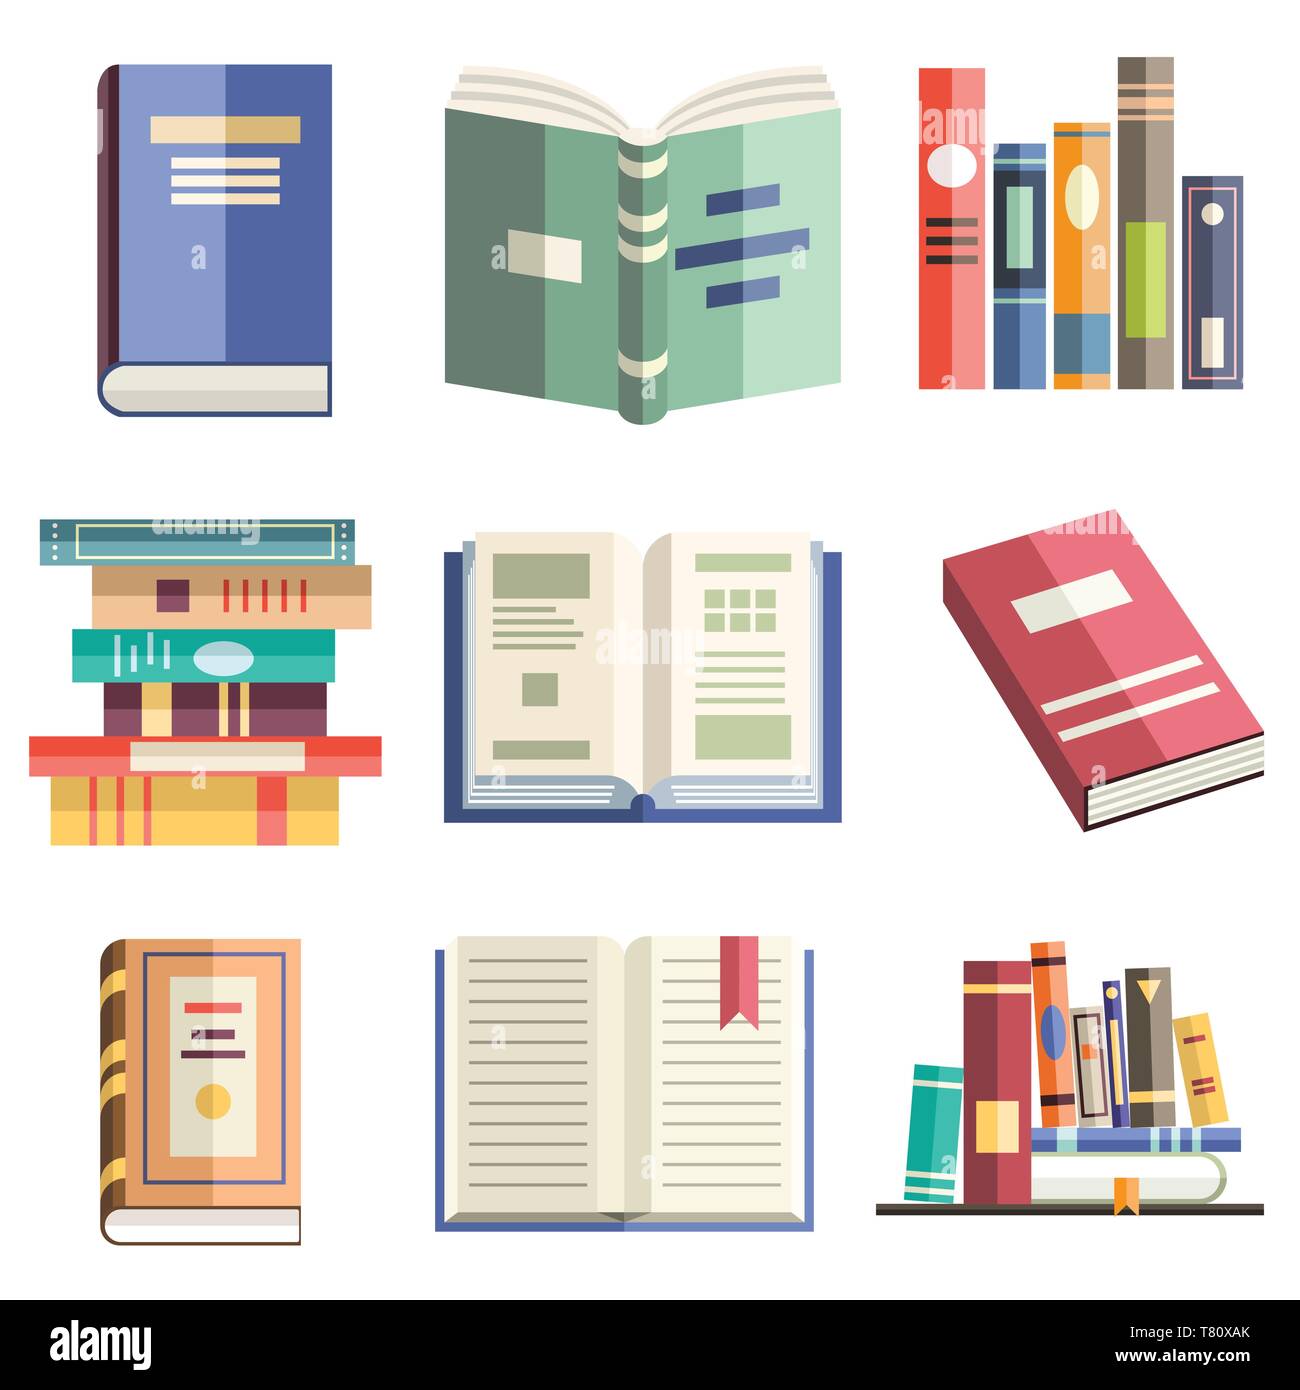 Bunte Flat Style Icons von isolierten Bücher in verschiedenen Positionen. Lernen, Lernen, Bildung, Wissen, Literarure, Wissenschaft und Bibliothek Objekte Stock Vektor